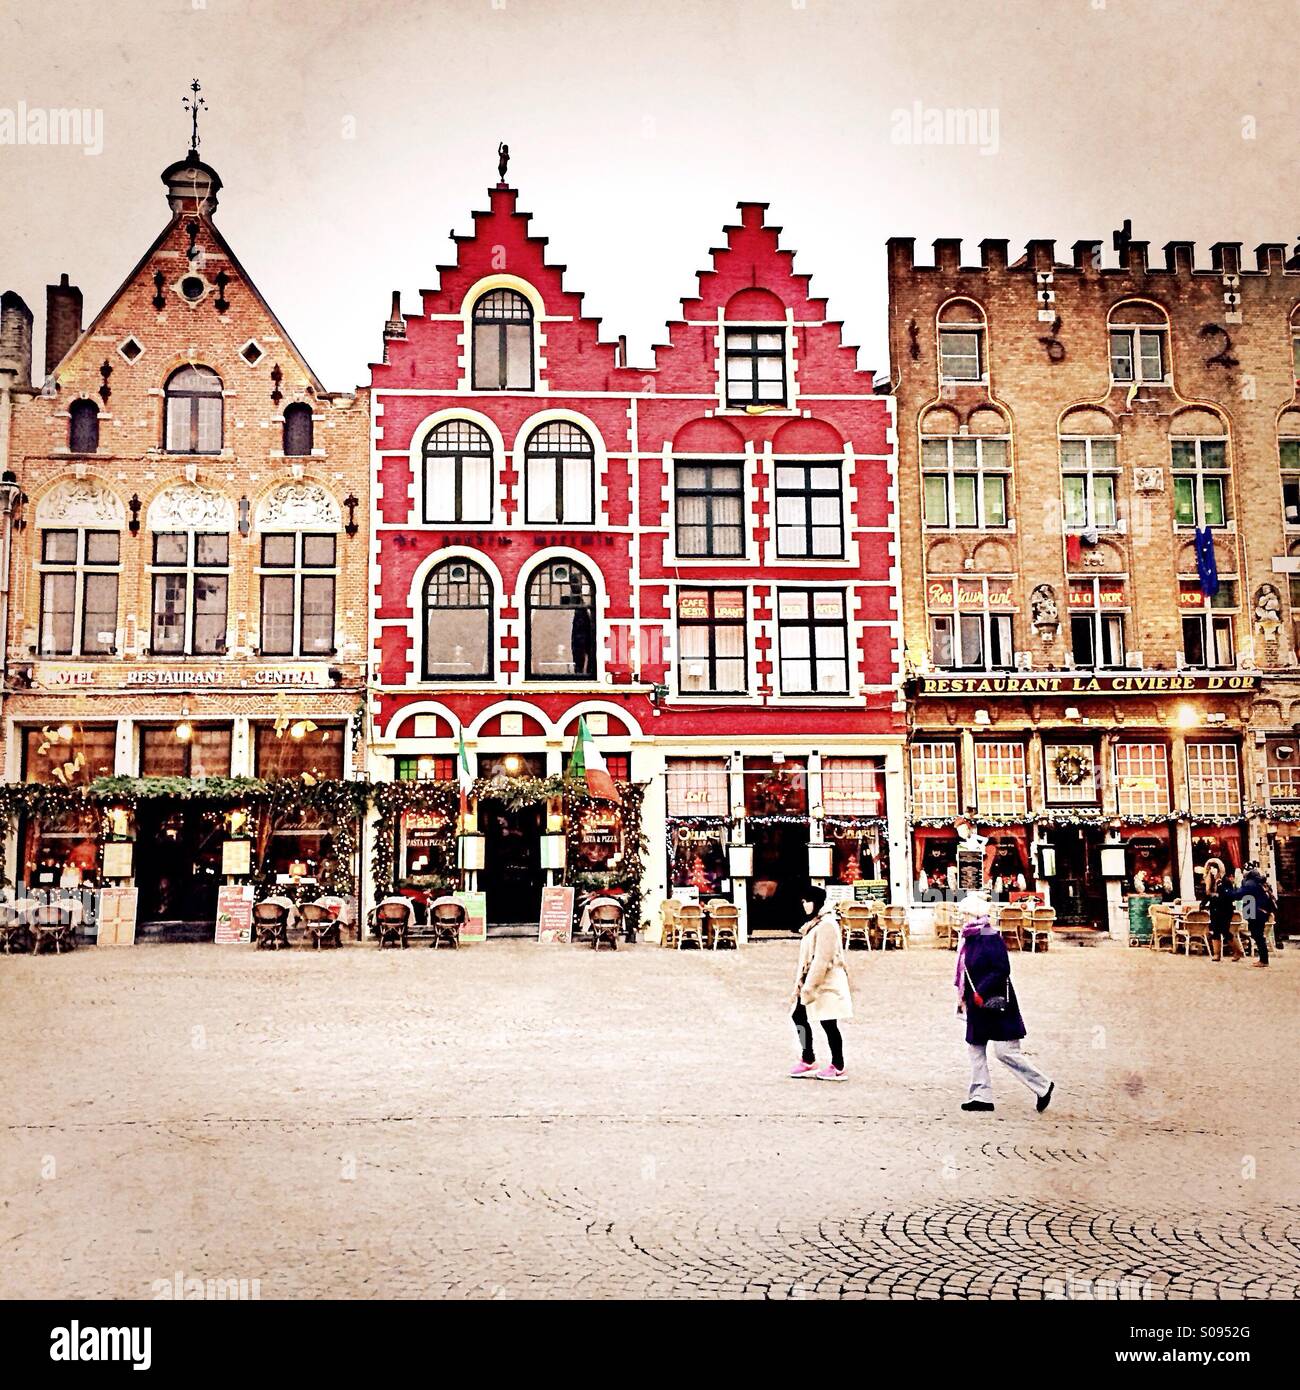 Bâtiments traditionnels dans la place du marché, Bruges, Belgique, Europe Banque D'Images